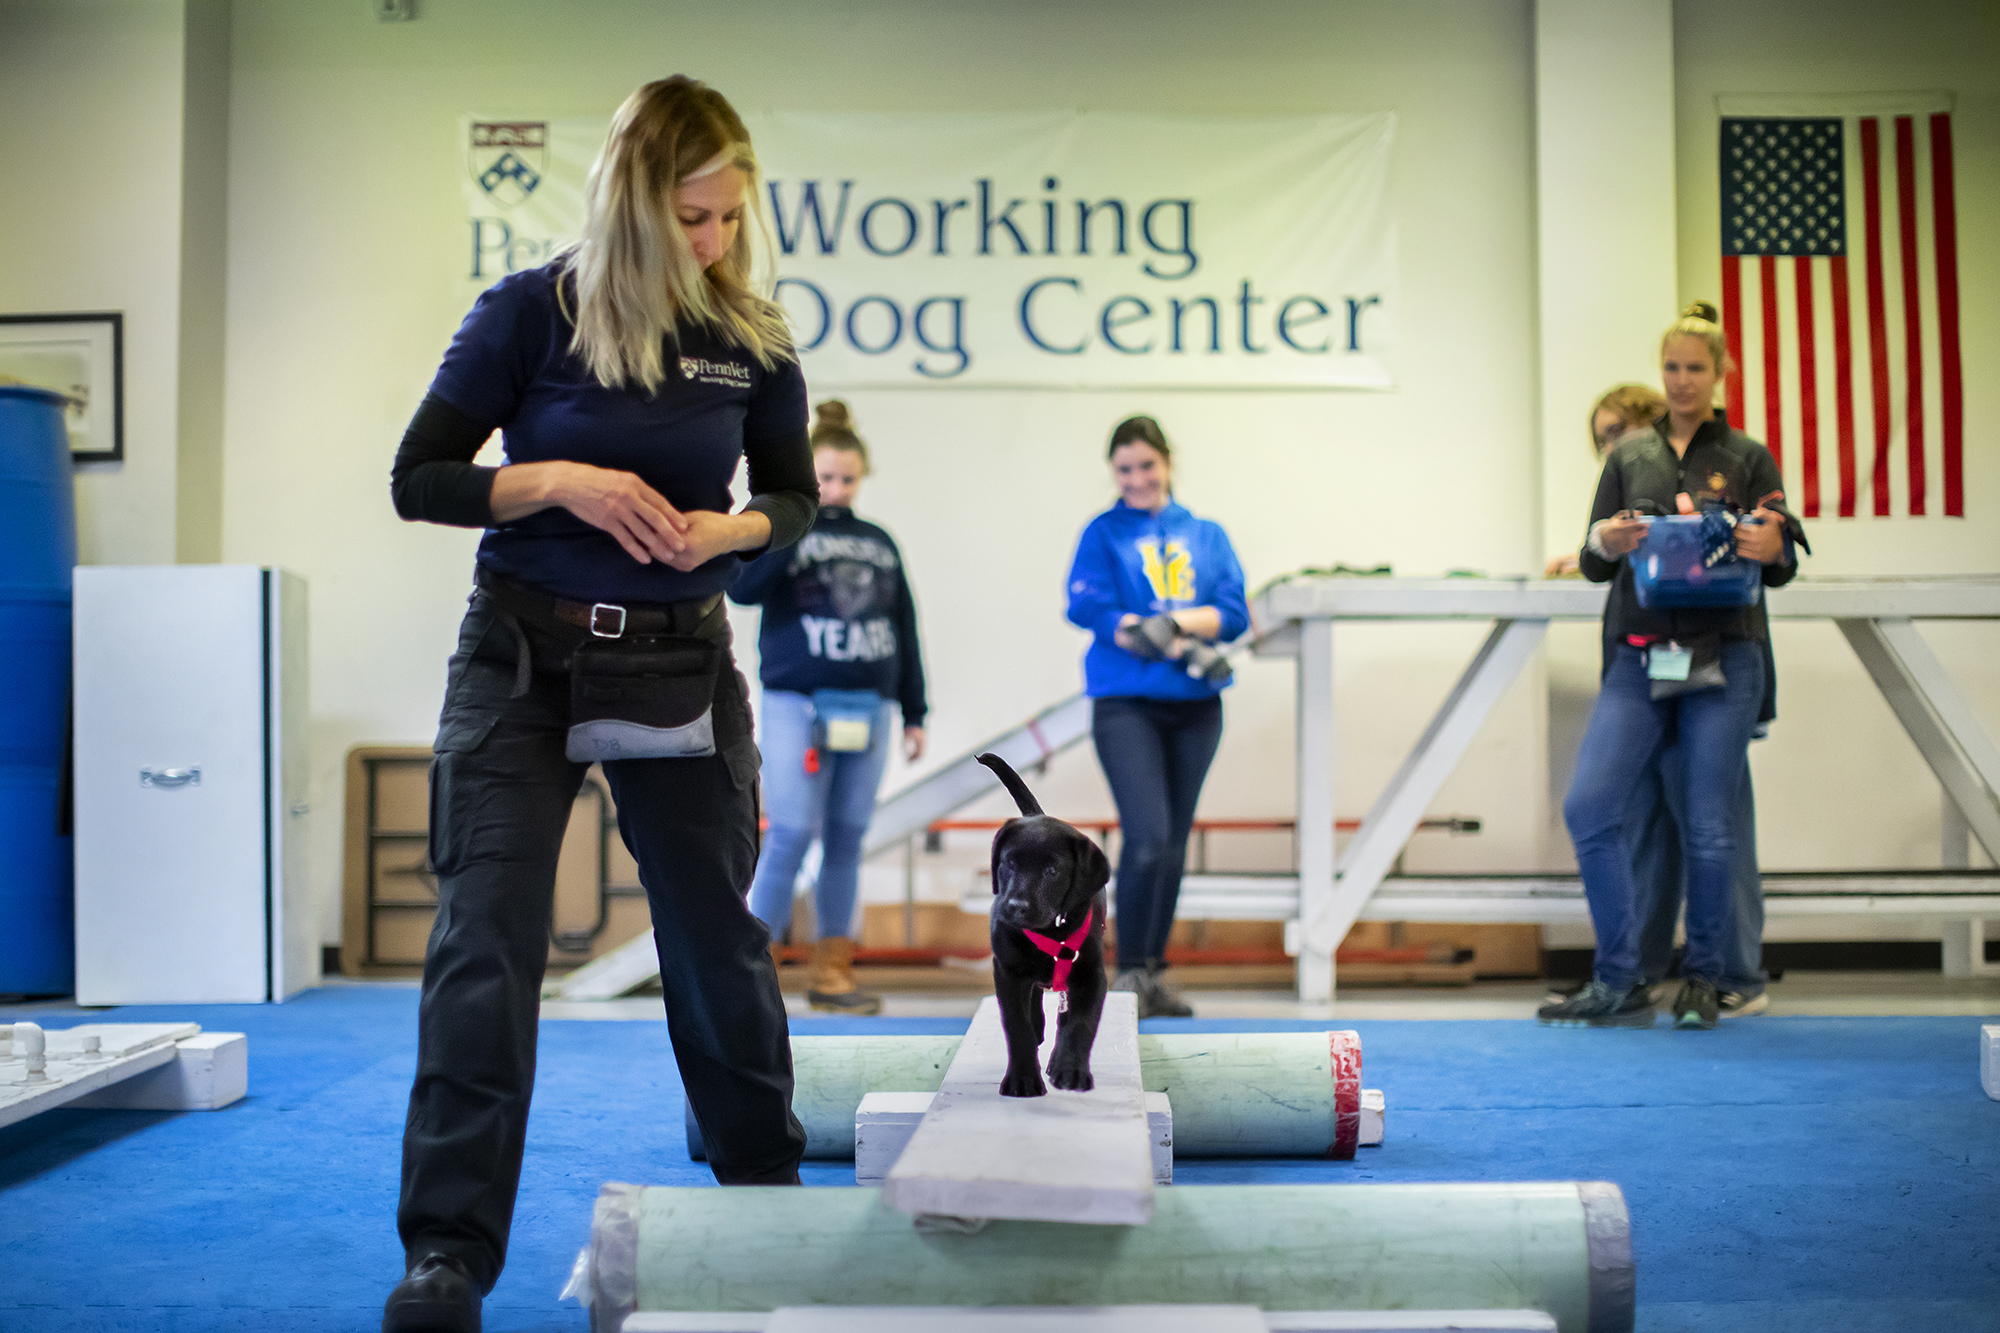 Penn Vet Working Dog Center trainer guides puppy across plank